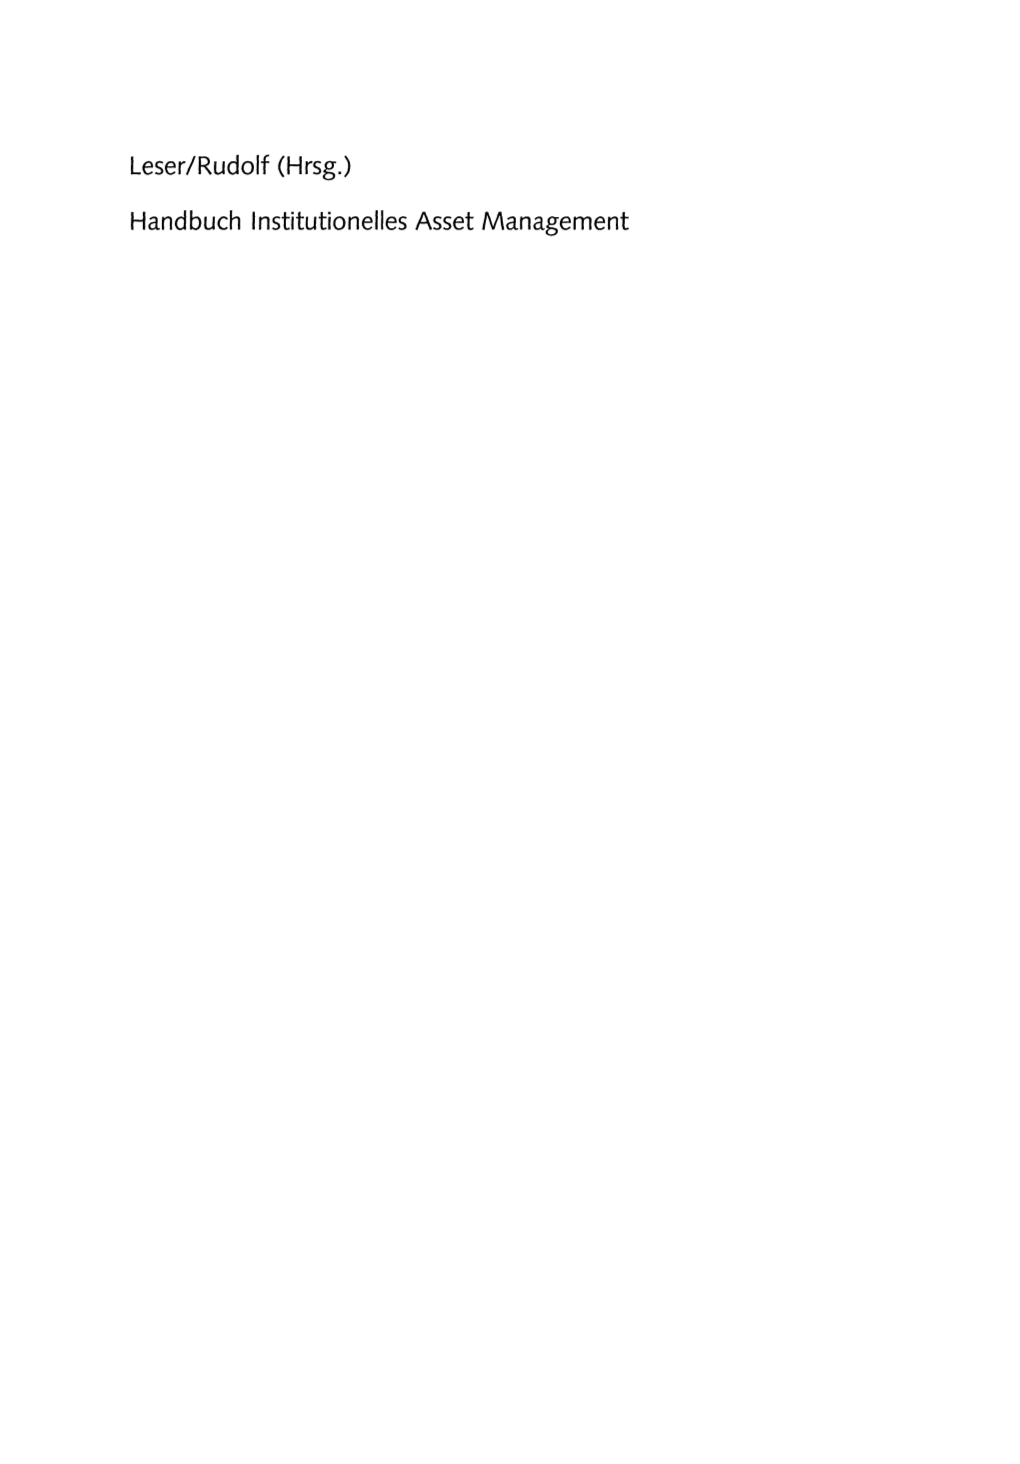 Leser/Rudolf (Hrsg.) Handbuch Institutionelles Asset Management